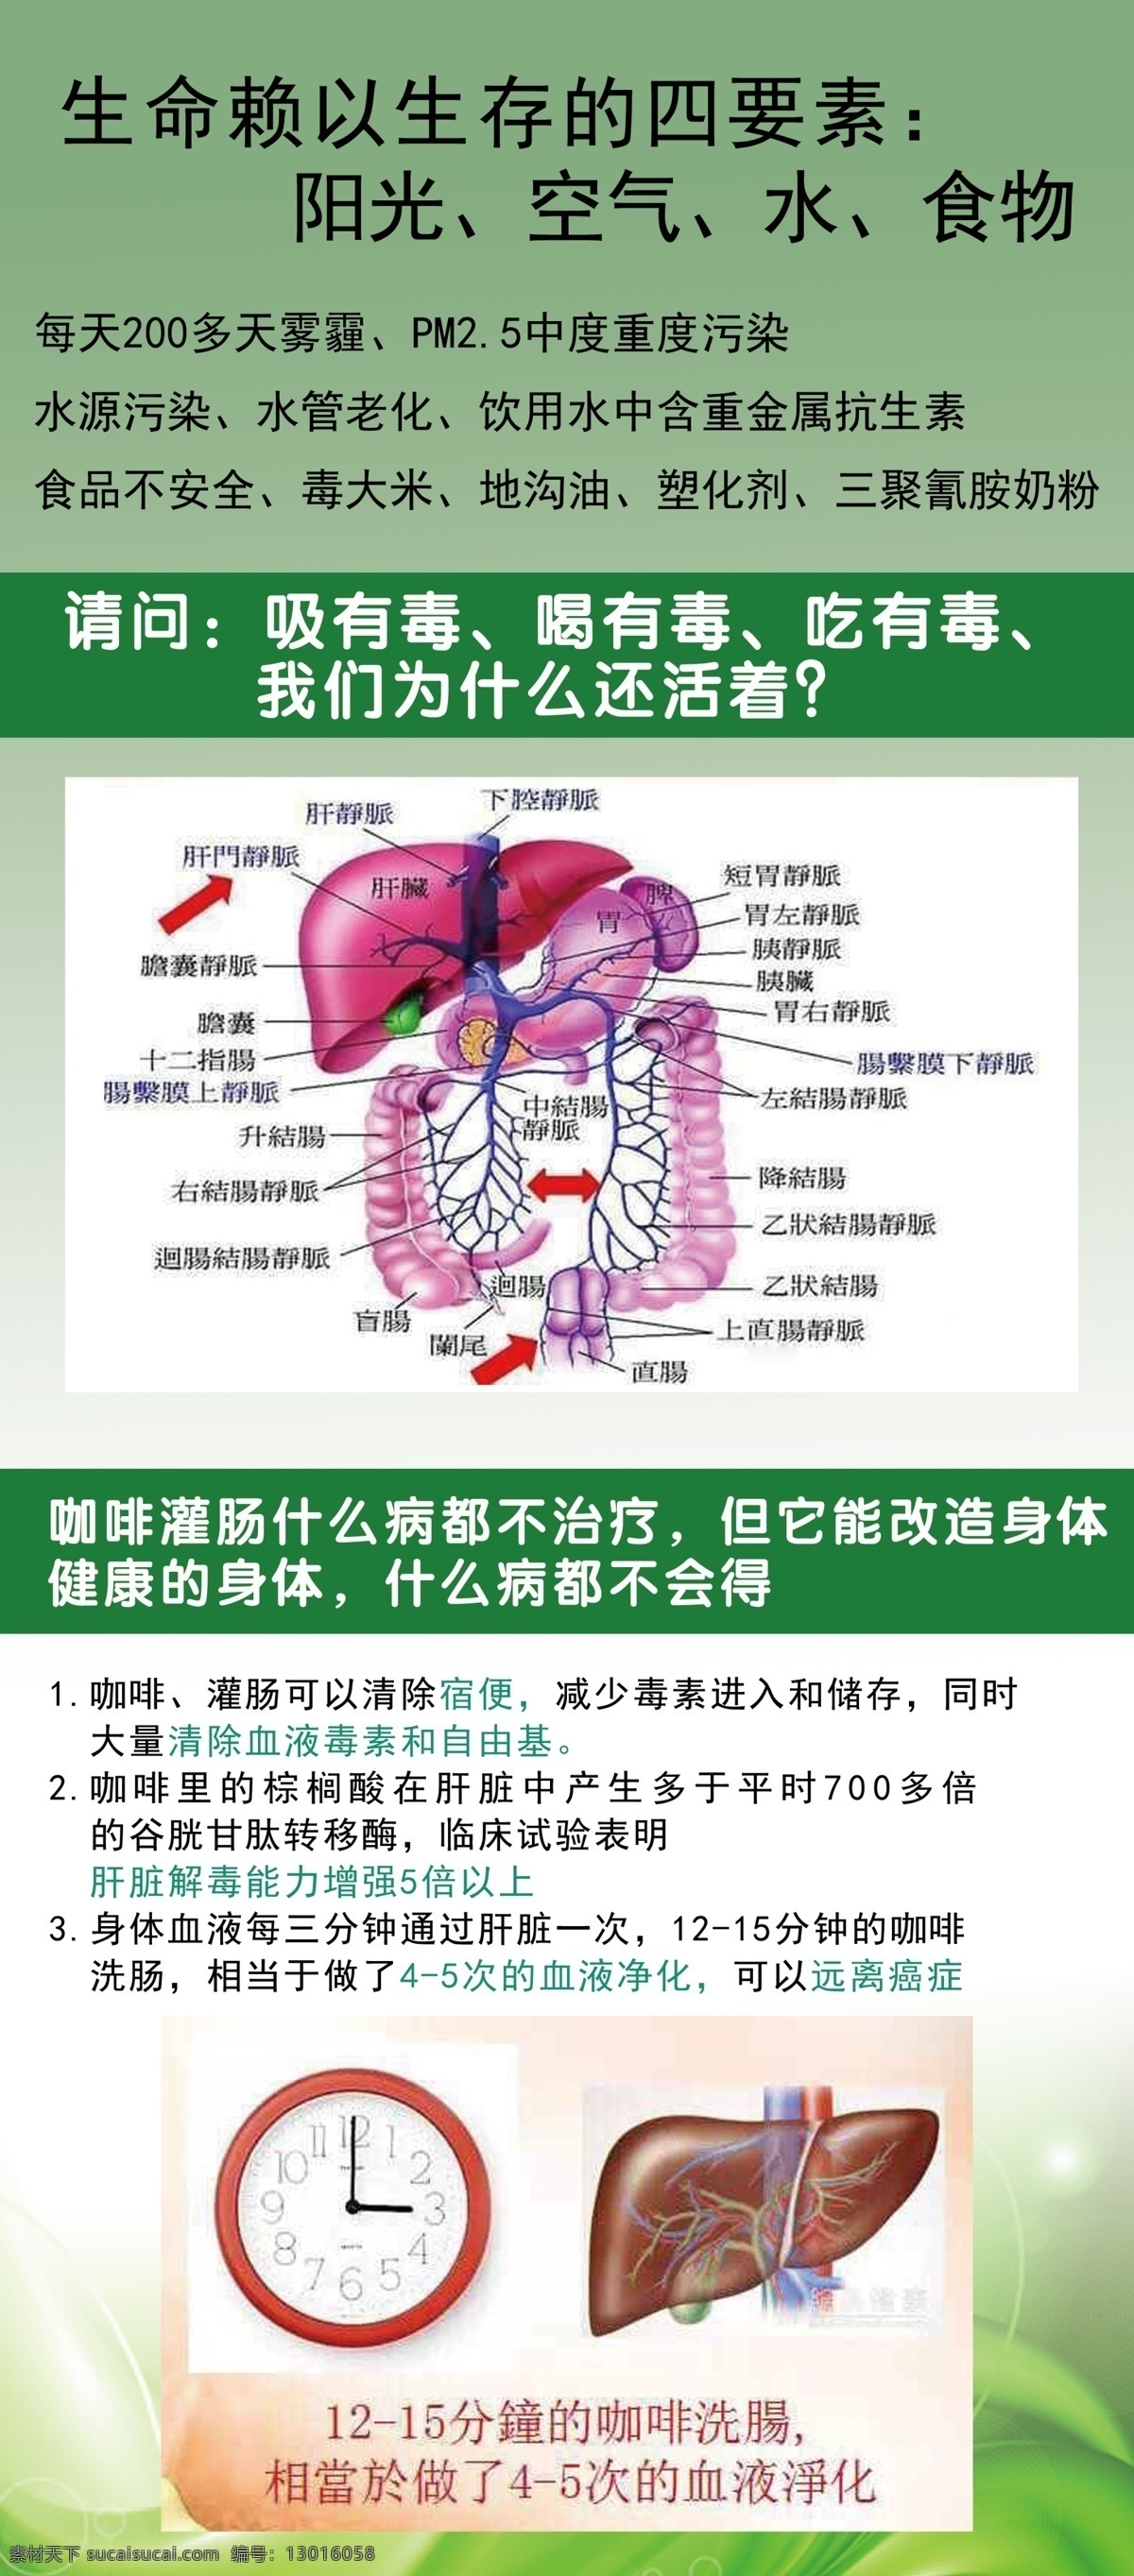 肝 门静脉 宣传 展架 肝门静脉宣传 展架下载 绿色 肝门静脉图 咖啡灌肠